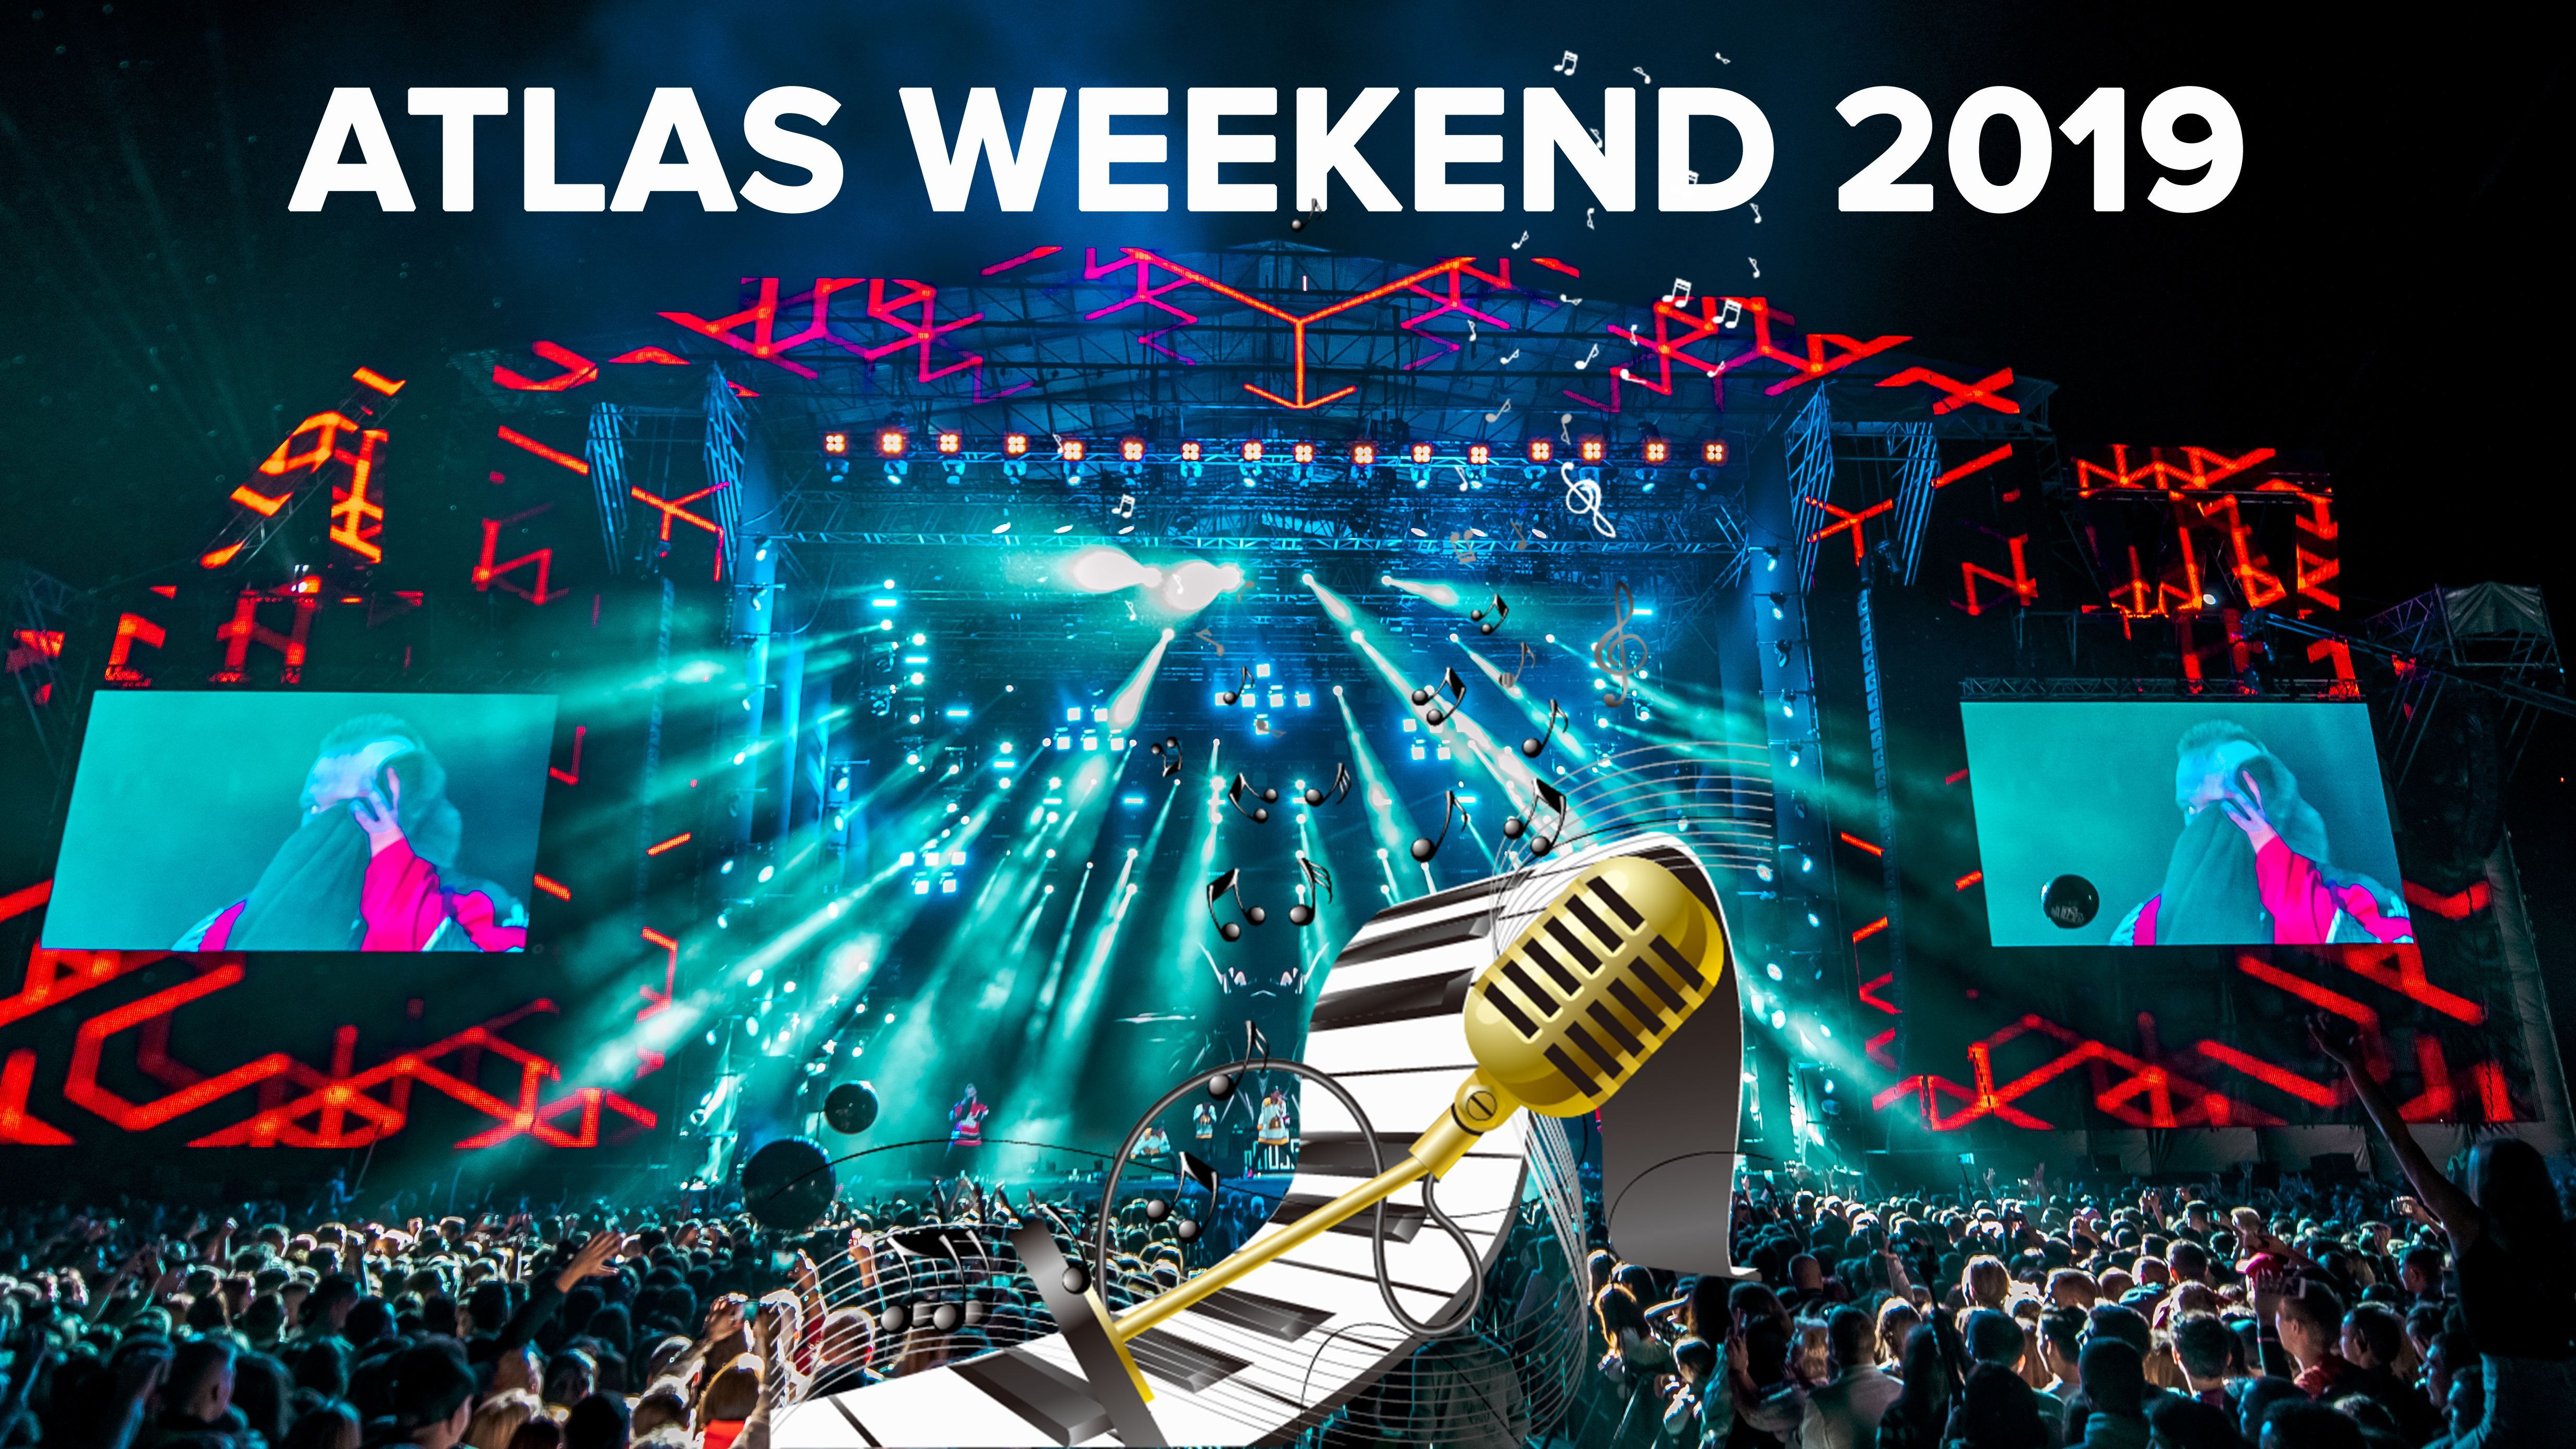 Atlas Weekend 2019 - расписание на все дни, участники, цена билета на фестиваль в Киеве